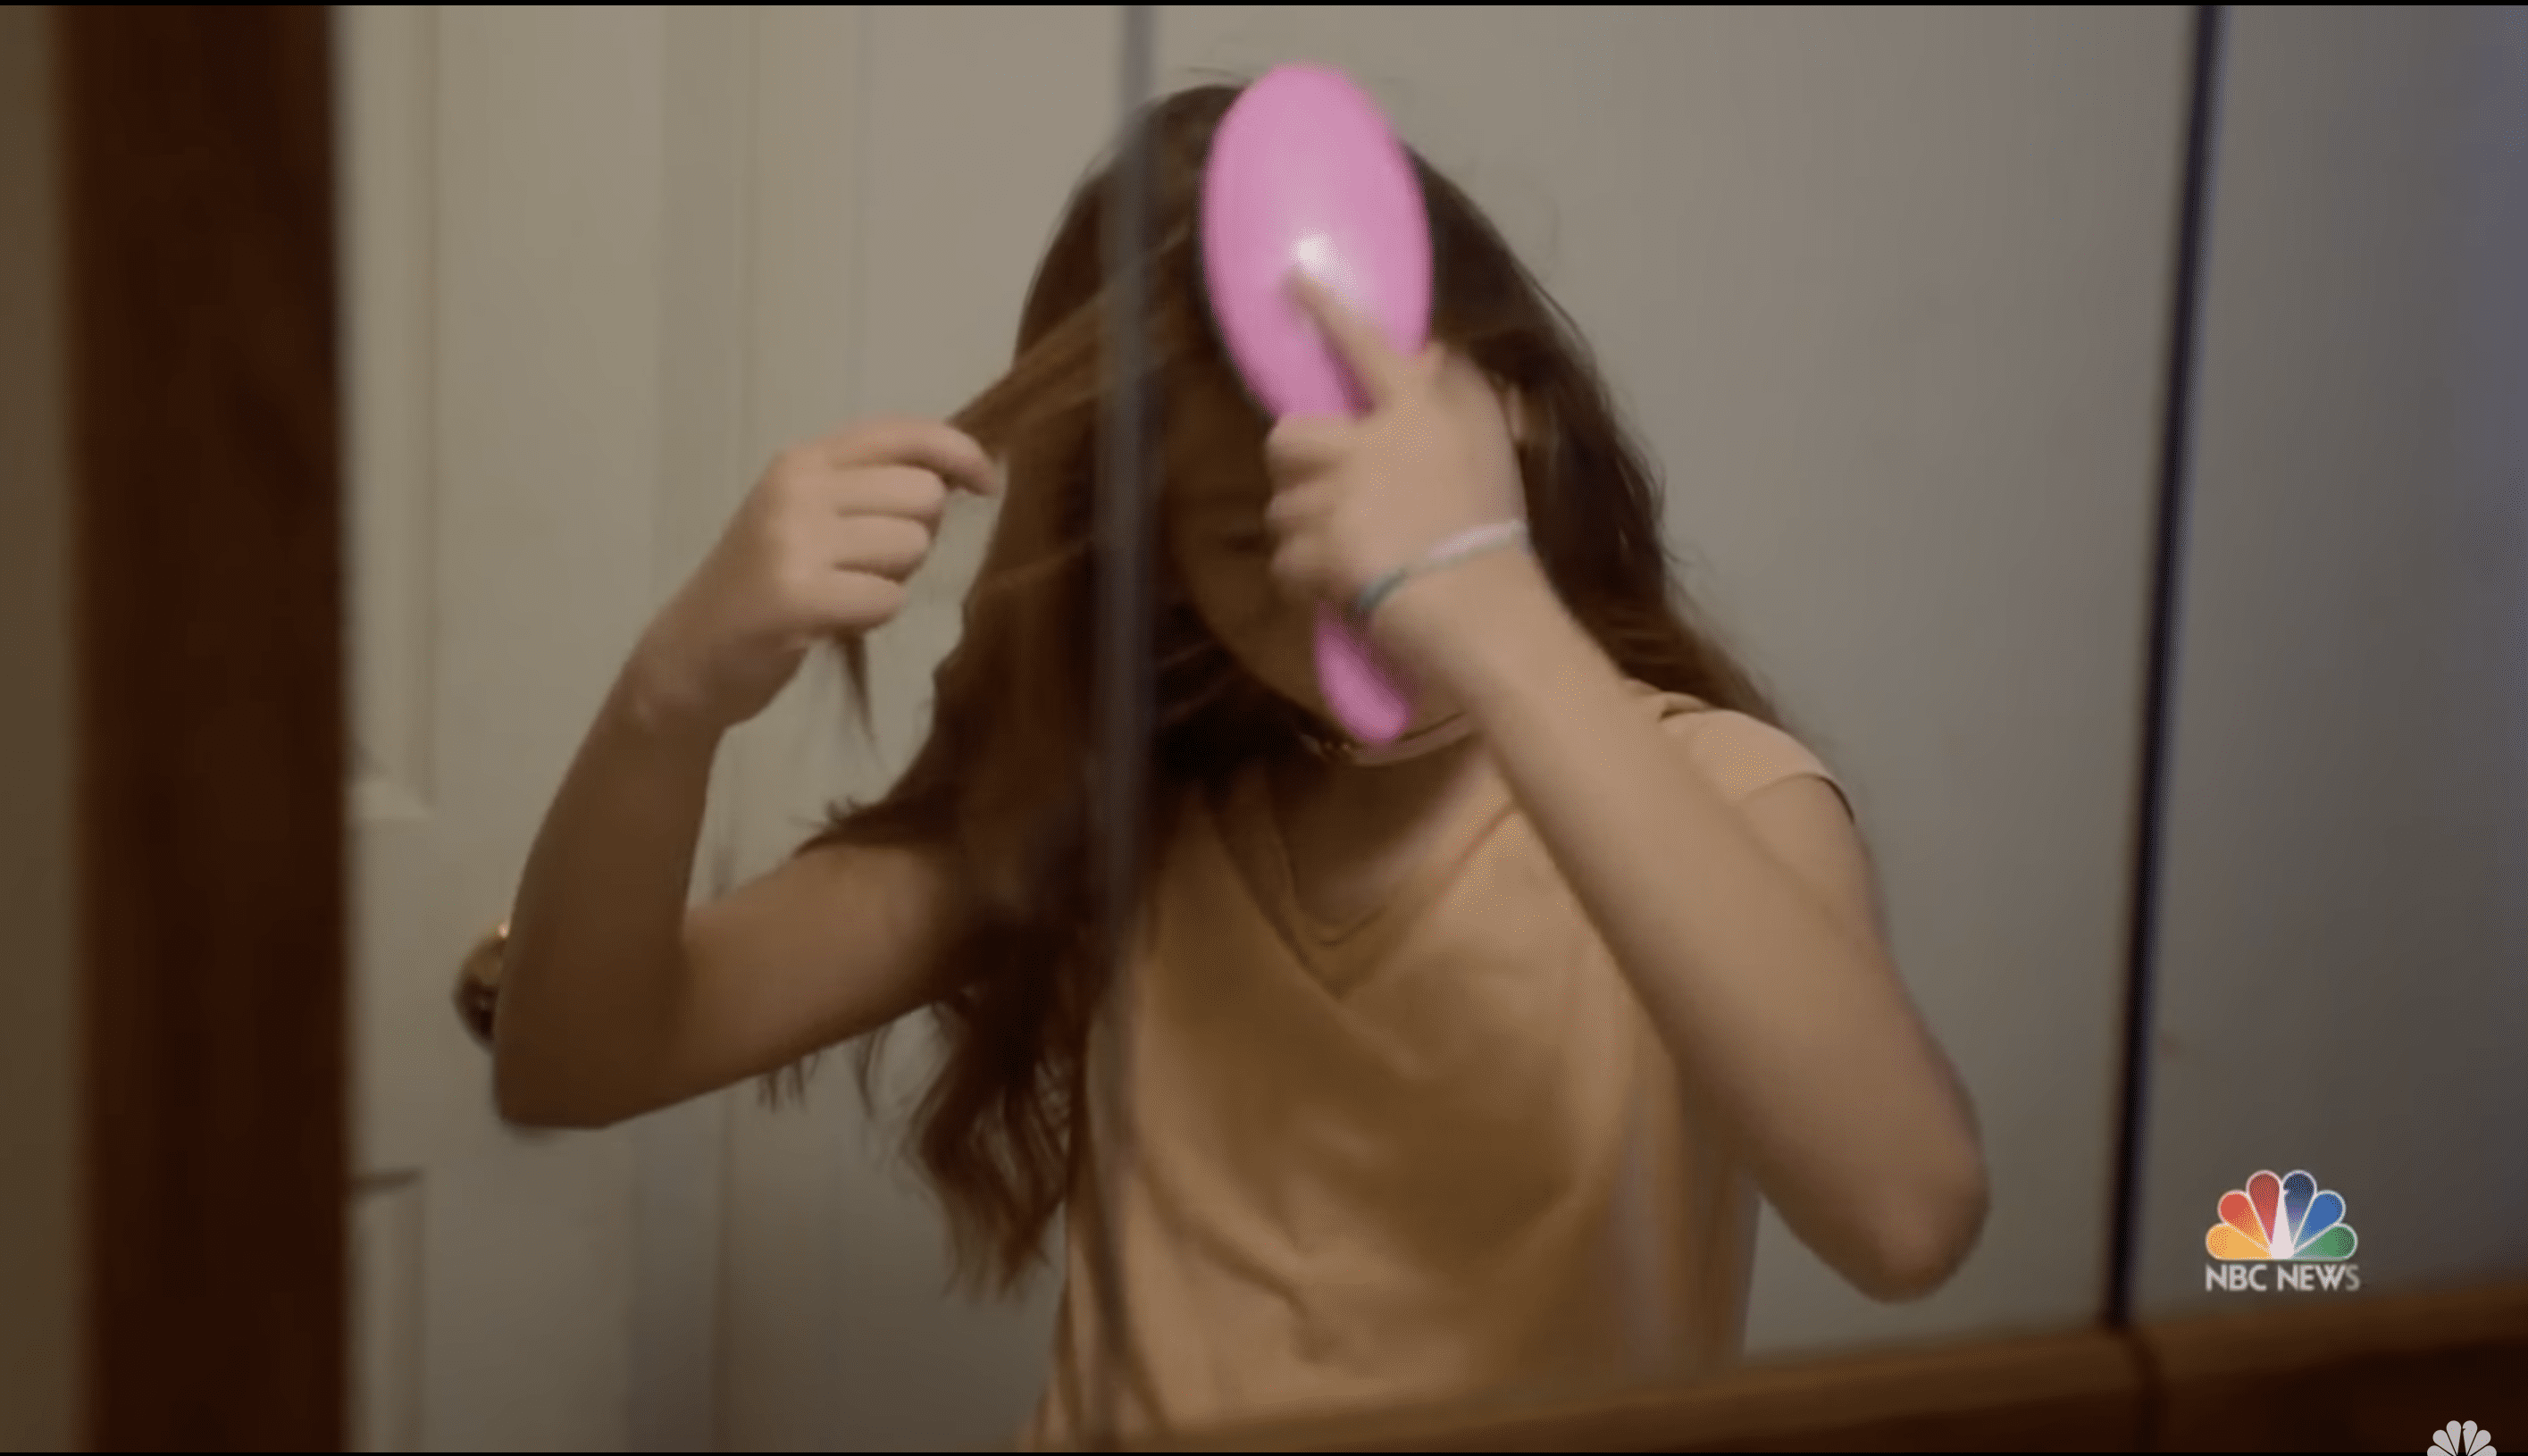 Isabella Pieri luchaba por arreglarse el cabello todas las mañanas. | Foto: YouTube/NBC News